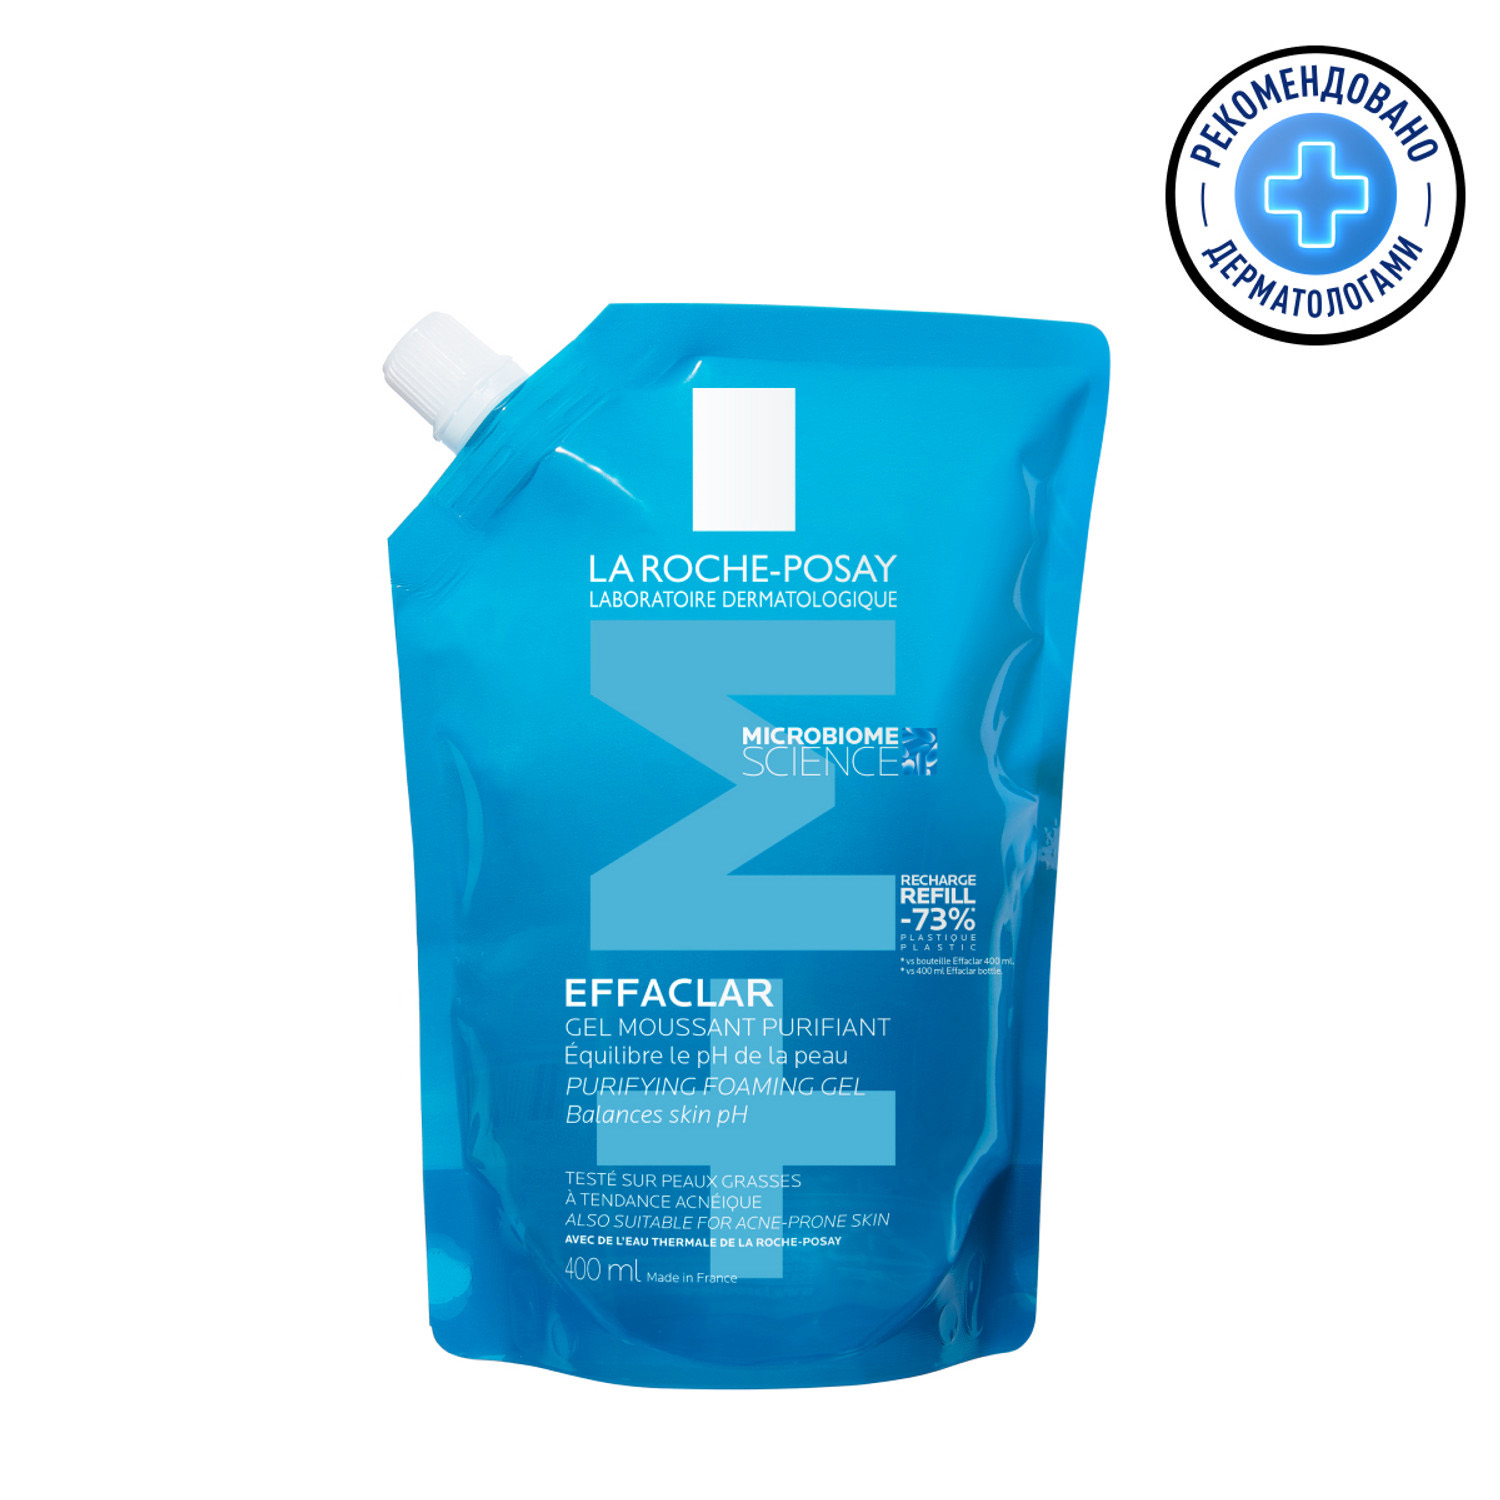 La Roche-Posay Гель для умывания очищающий пенящийся для чувствительной жирной кожи лица и тела, сменный блок (рефилл), 400 мл (La Roche-Posay, Effaclar)